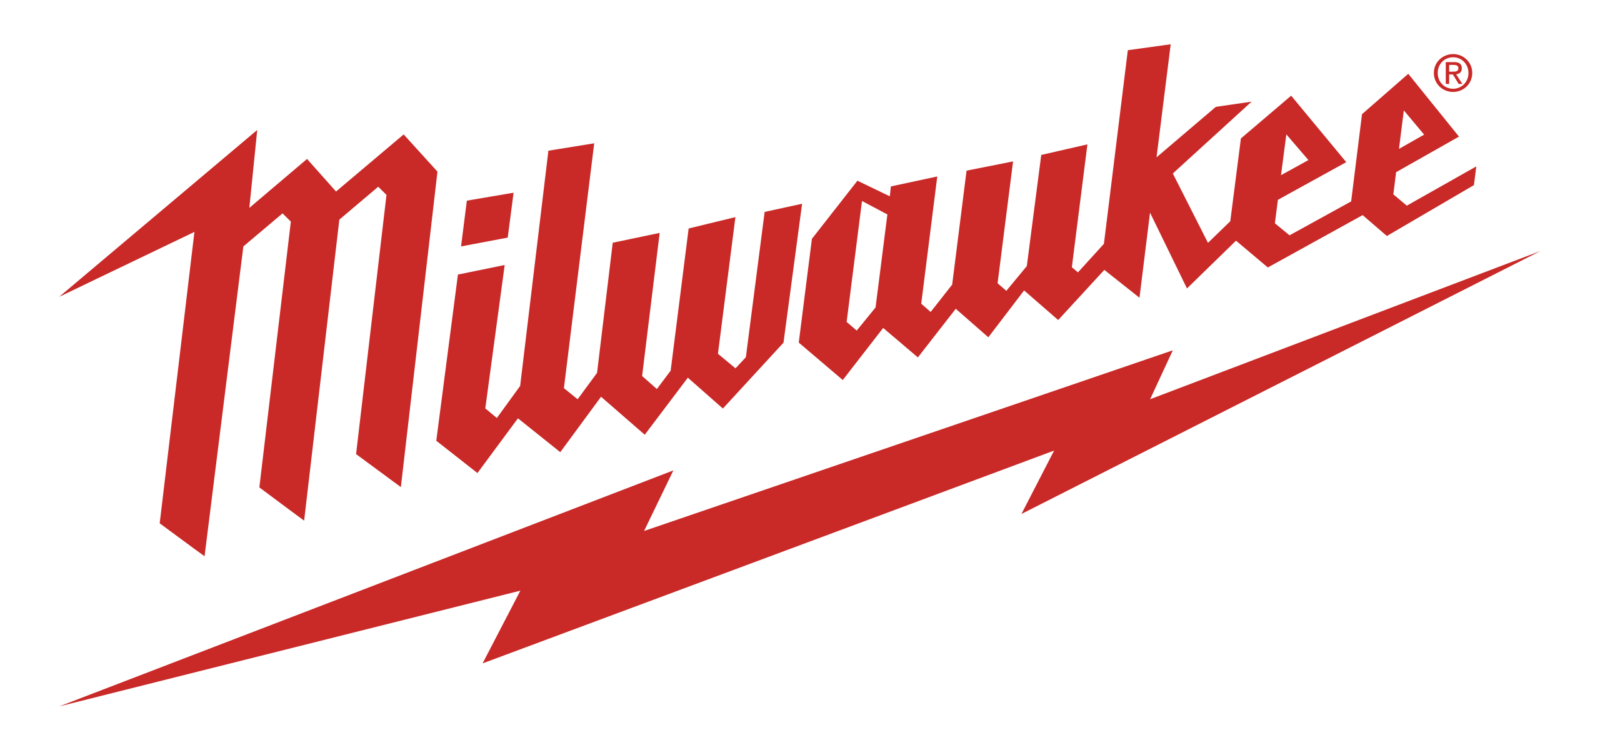 Logo-Milwaukee